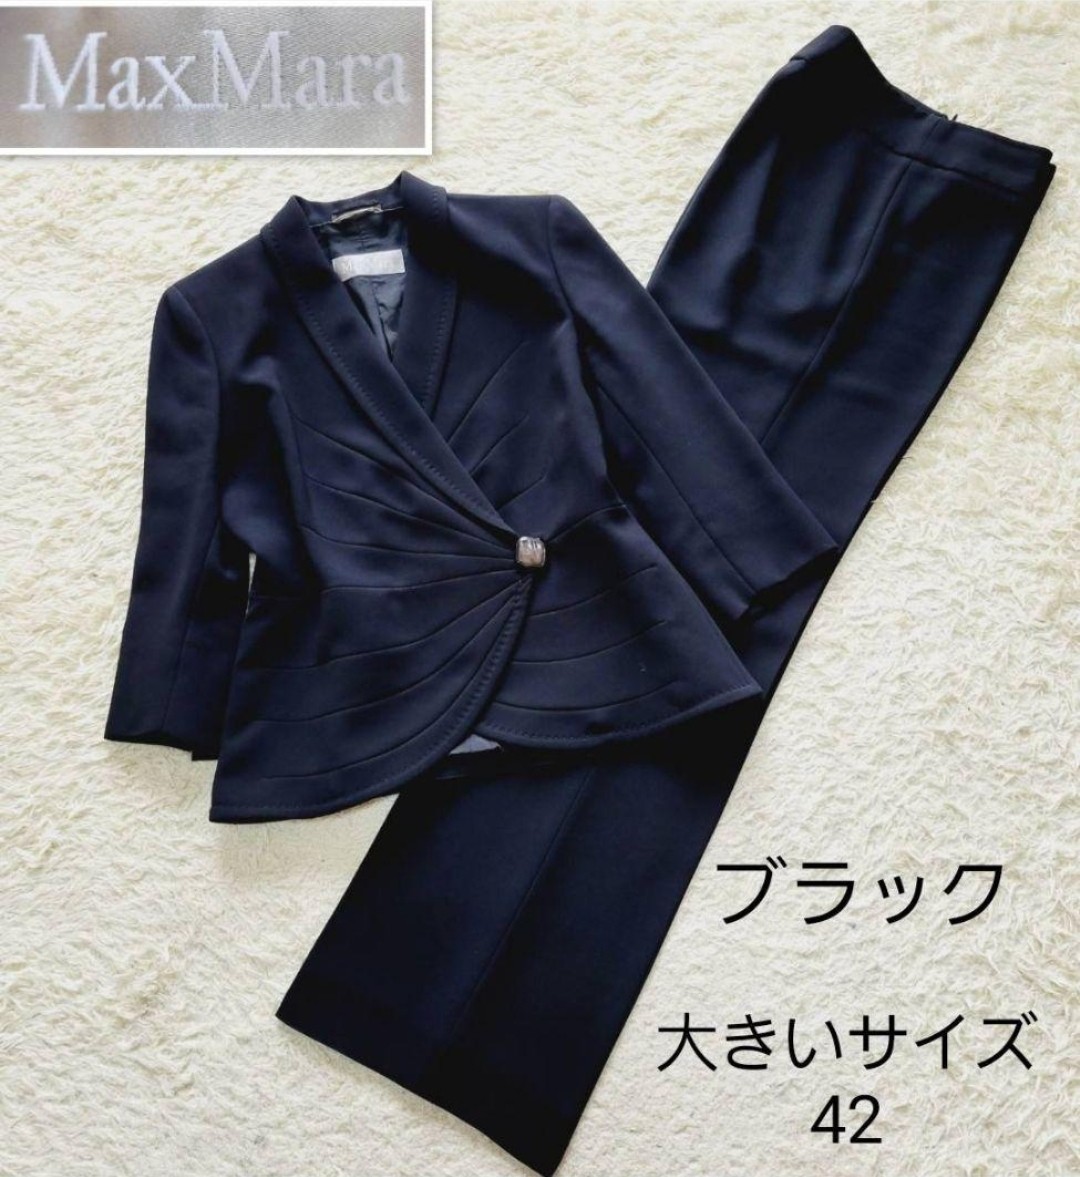 【銀タグ】美品 Max Mara マックスマーラ パンツスーツ セットアップ ブラック サイズ42 ビジネス リクルート ブラックフォーマル 冠婚葬祭